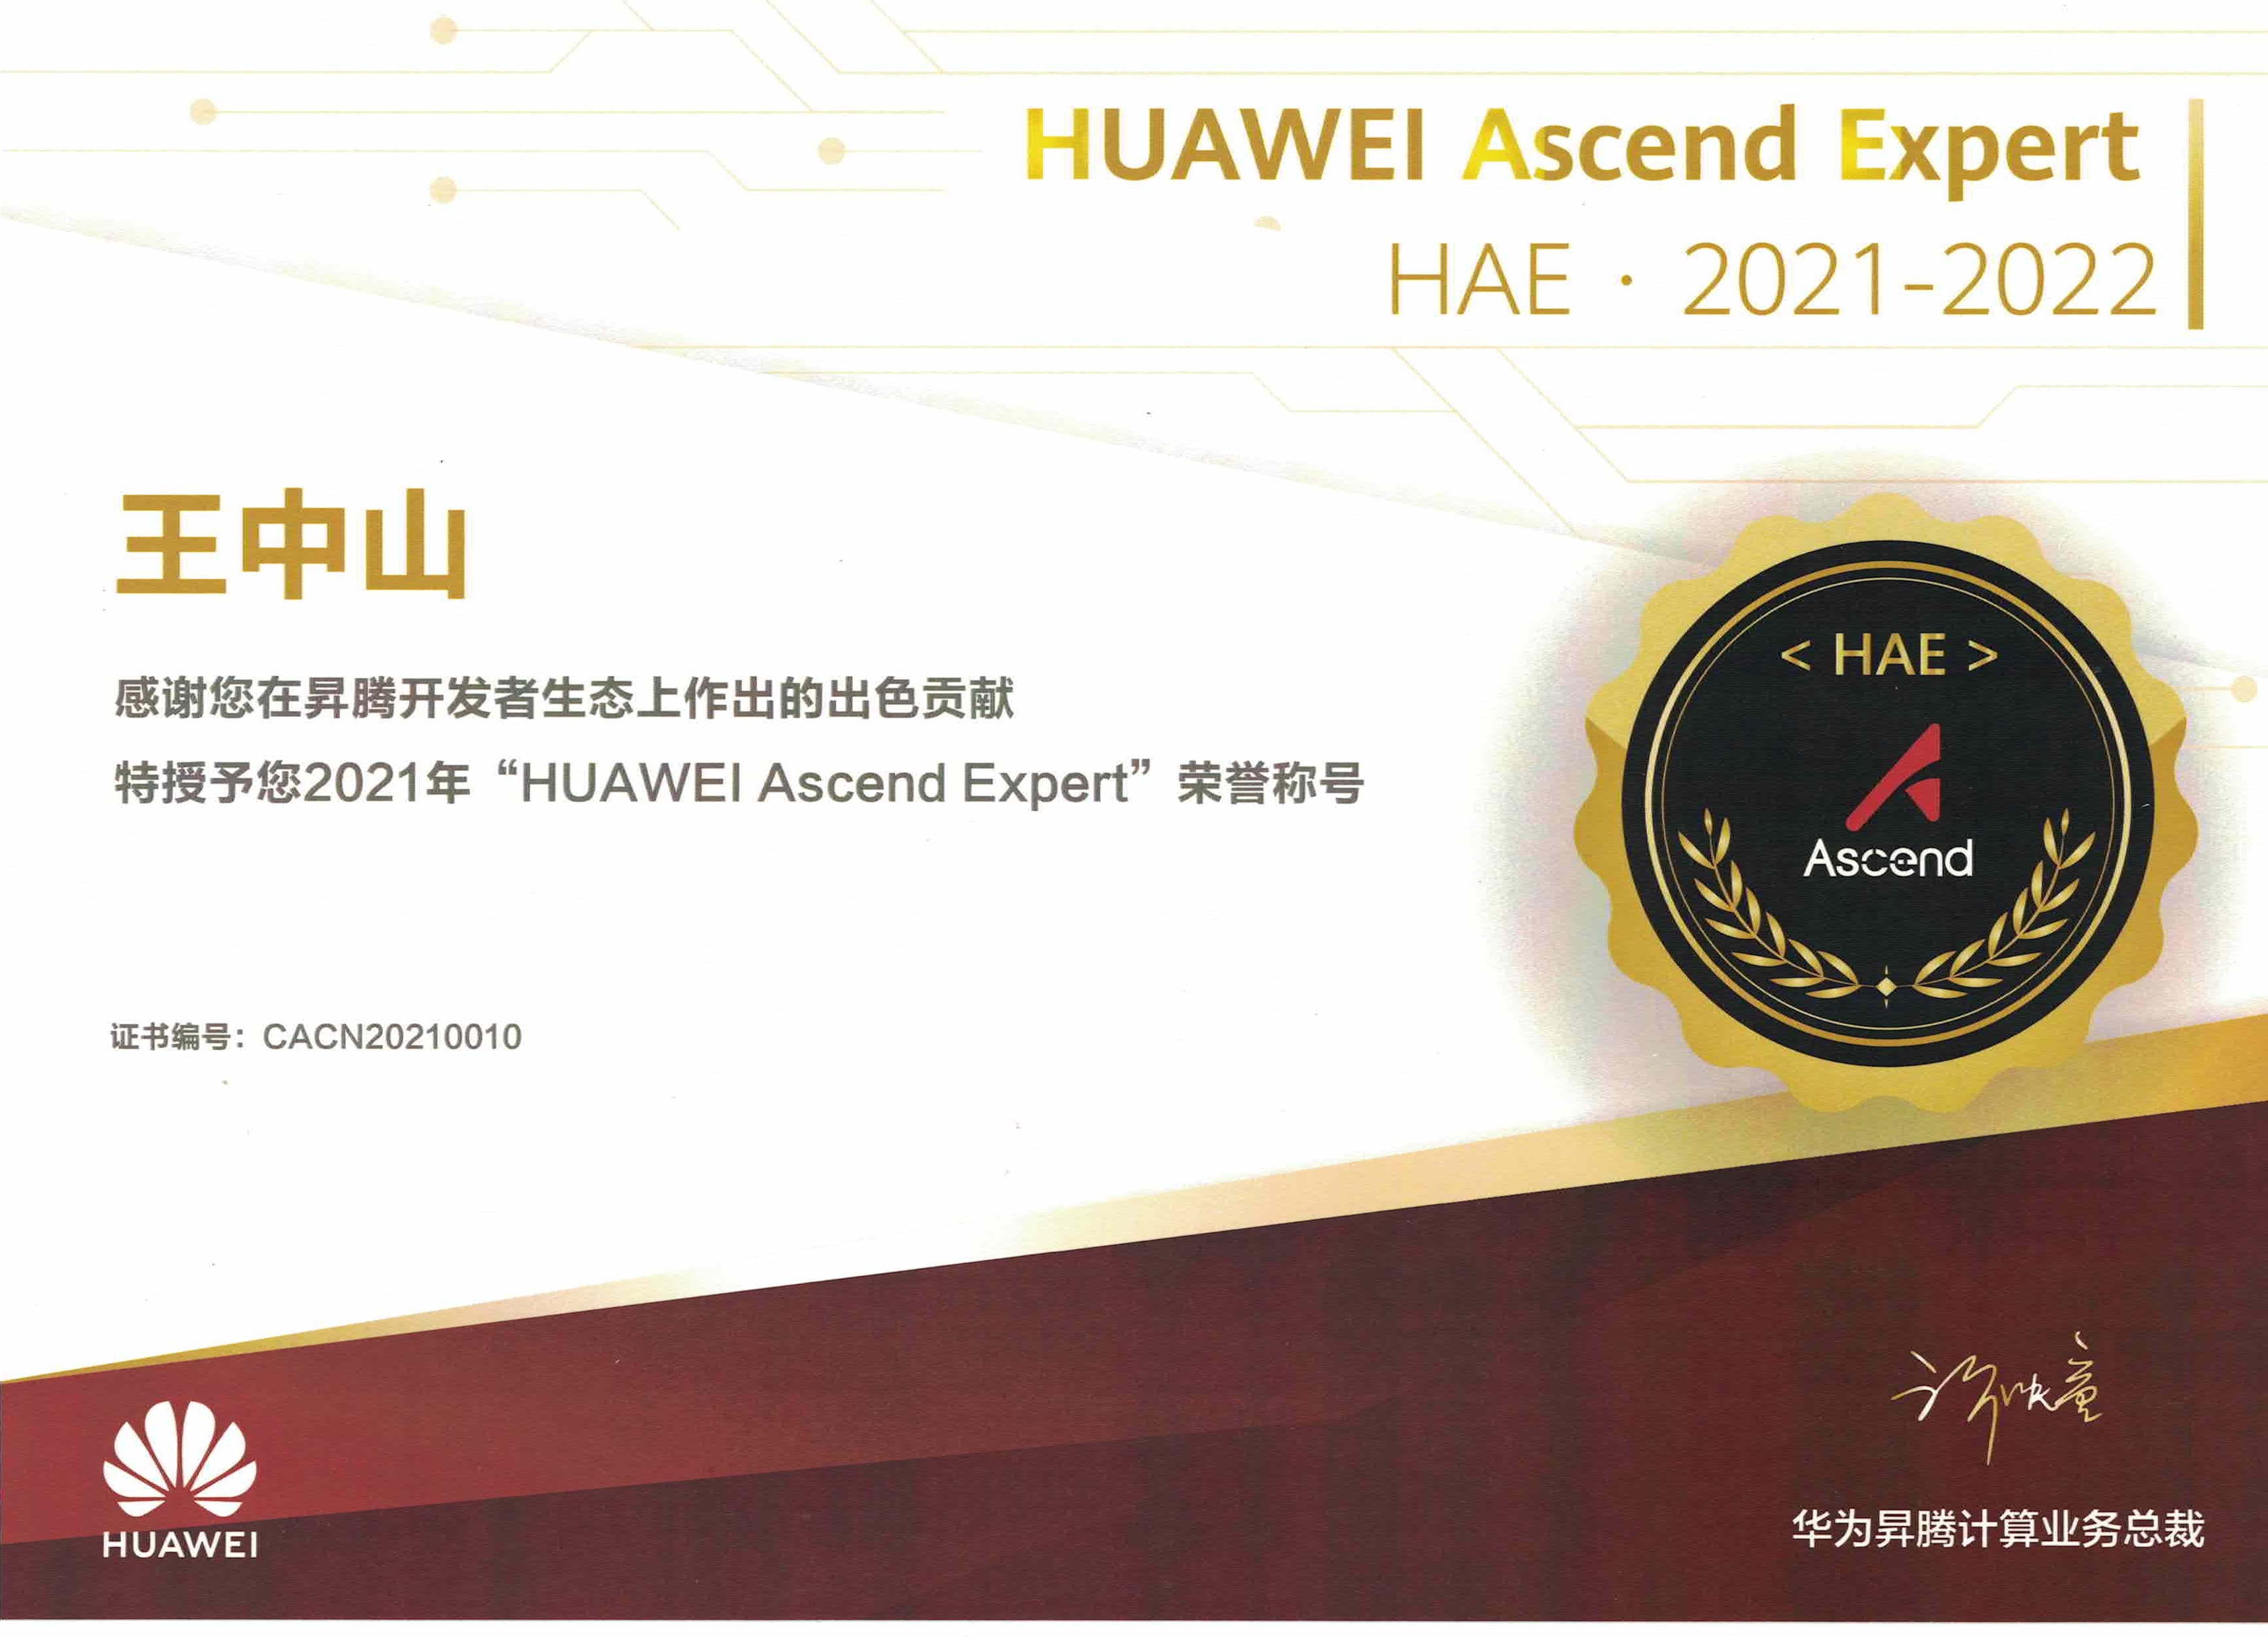 全爱科技获华为HAE认证 HUAWEI Ascend Expert